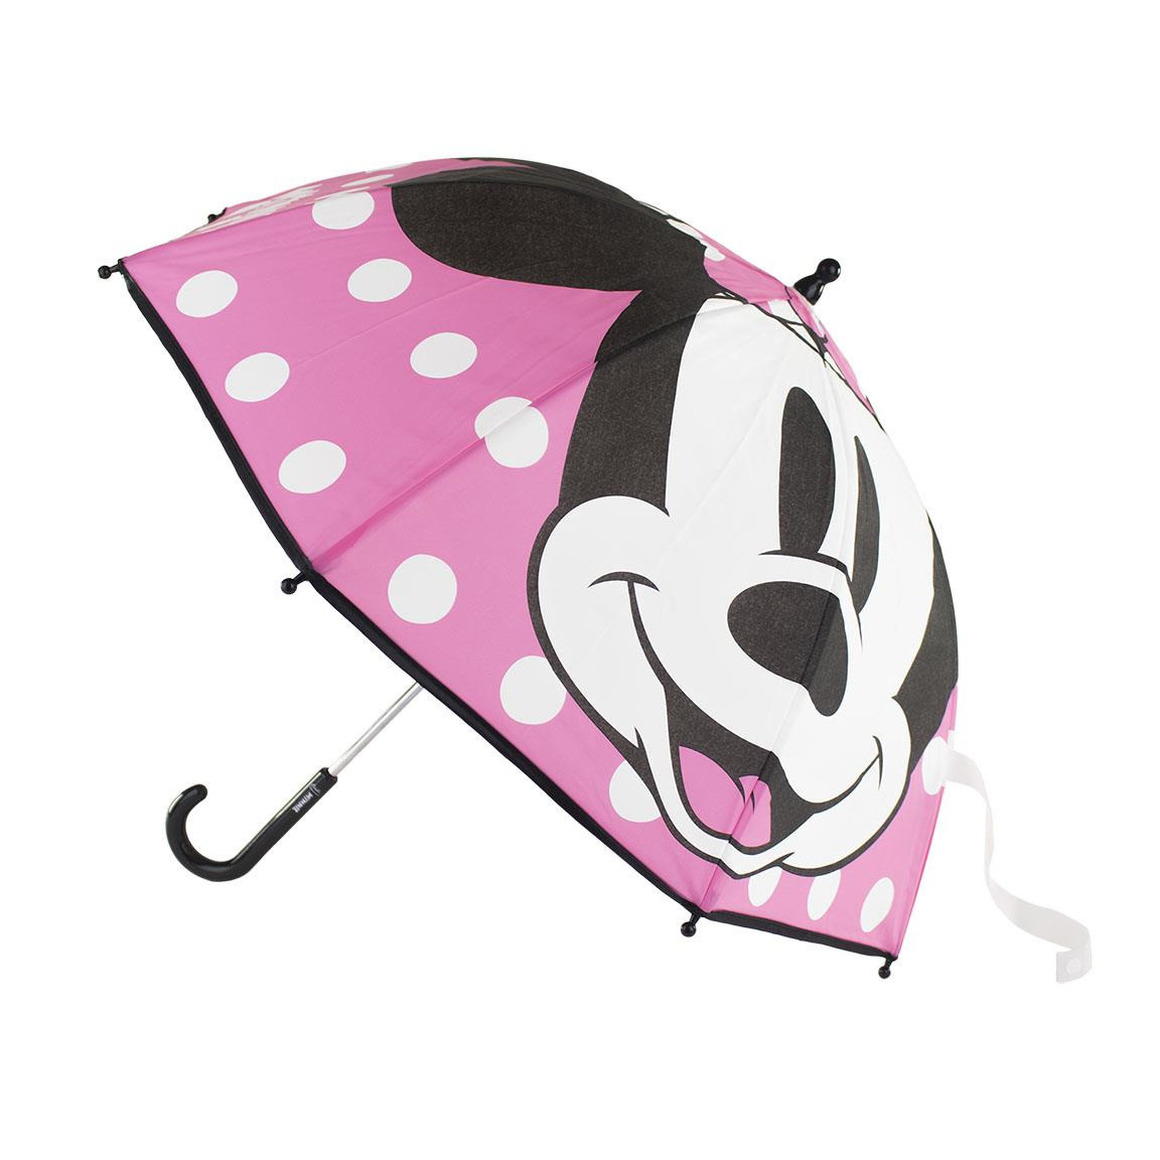 Kinder paraplu Minnie Mouse roze 71 cm